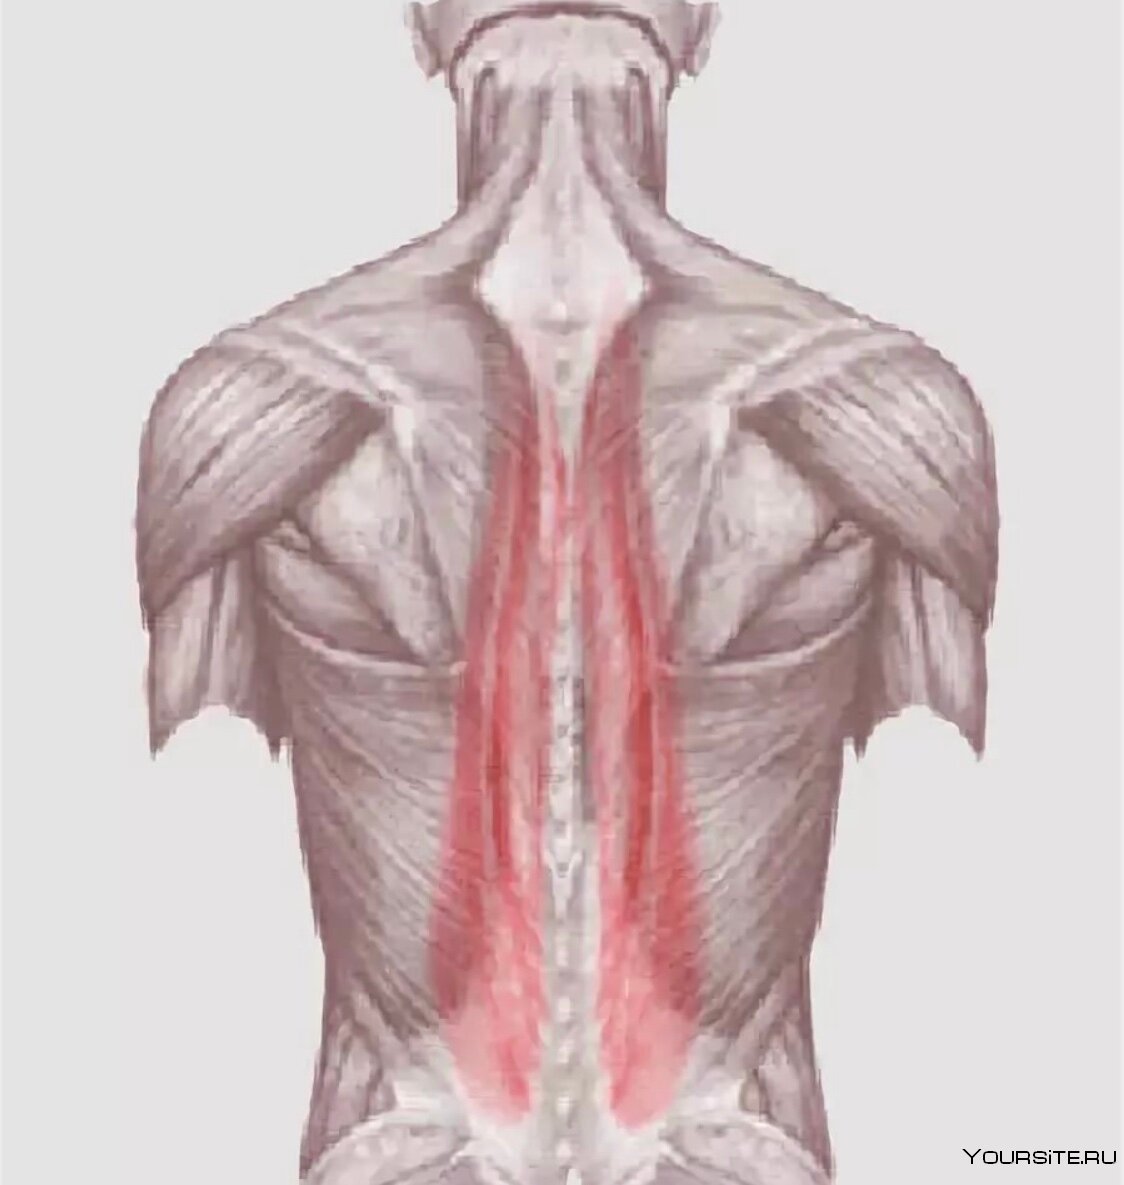 Мышцы разгибатели спины анатомия